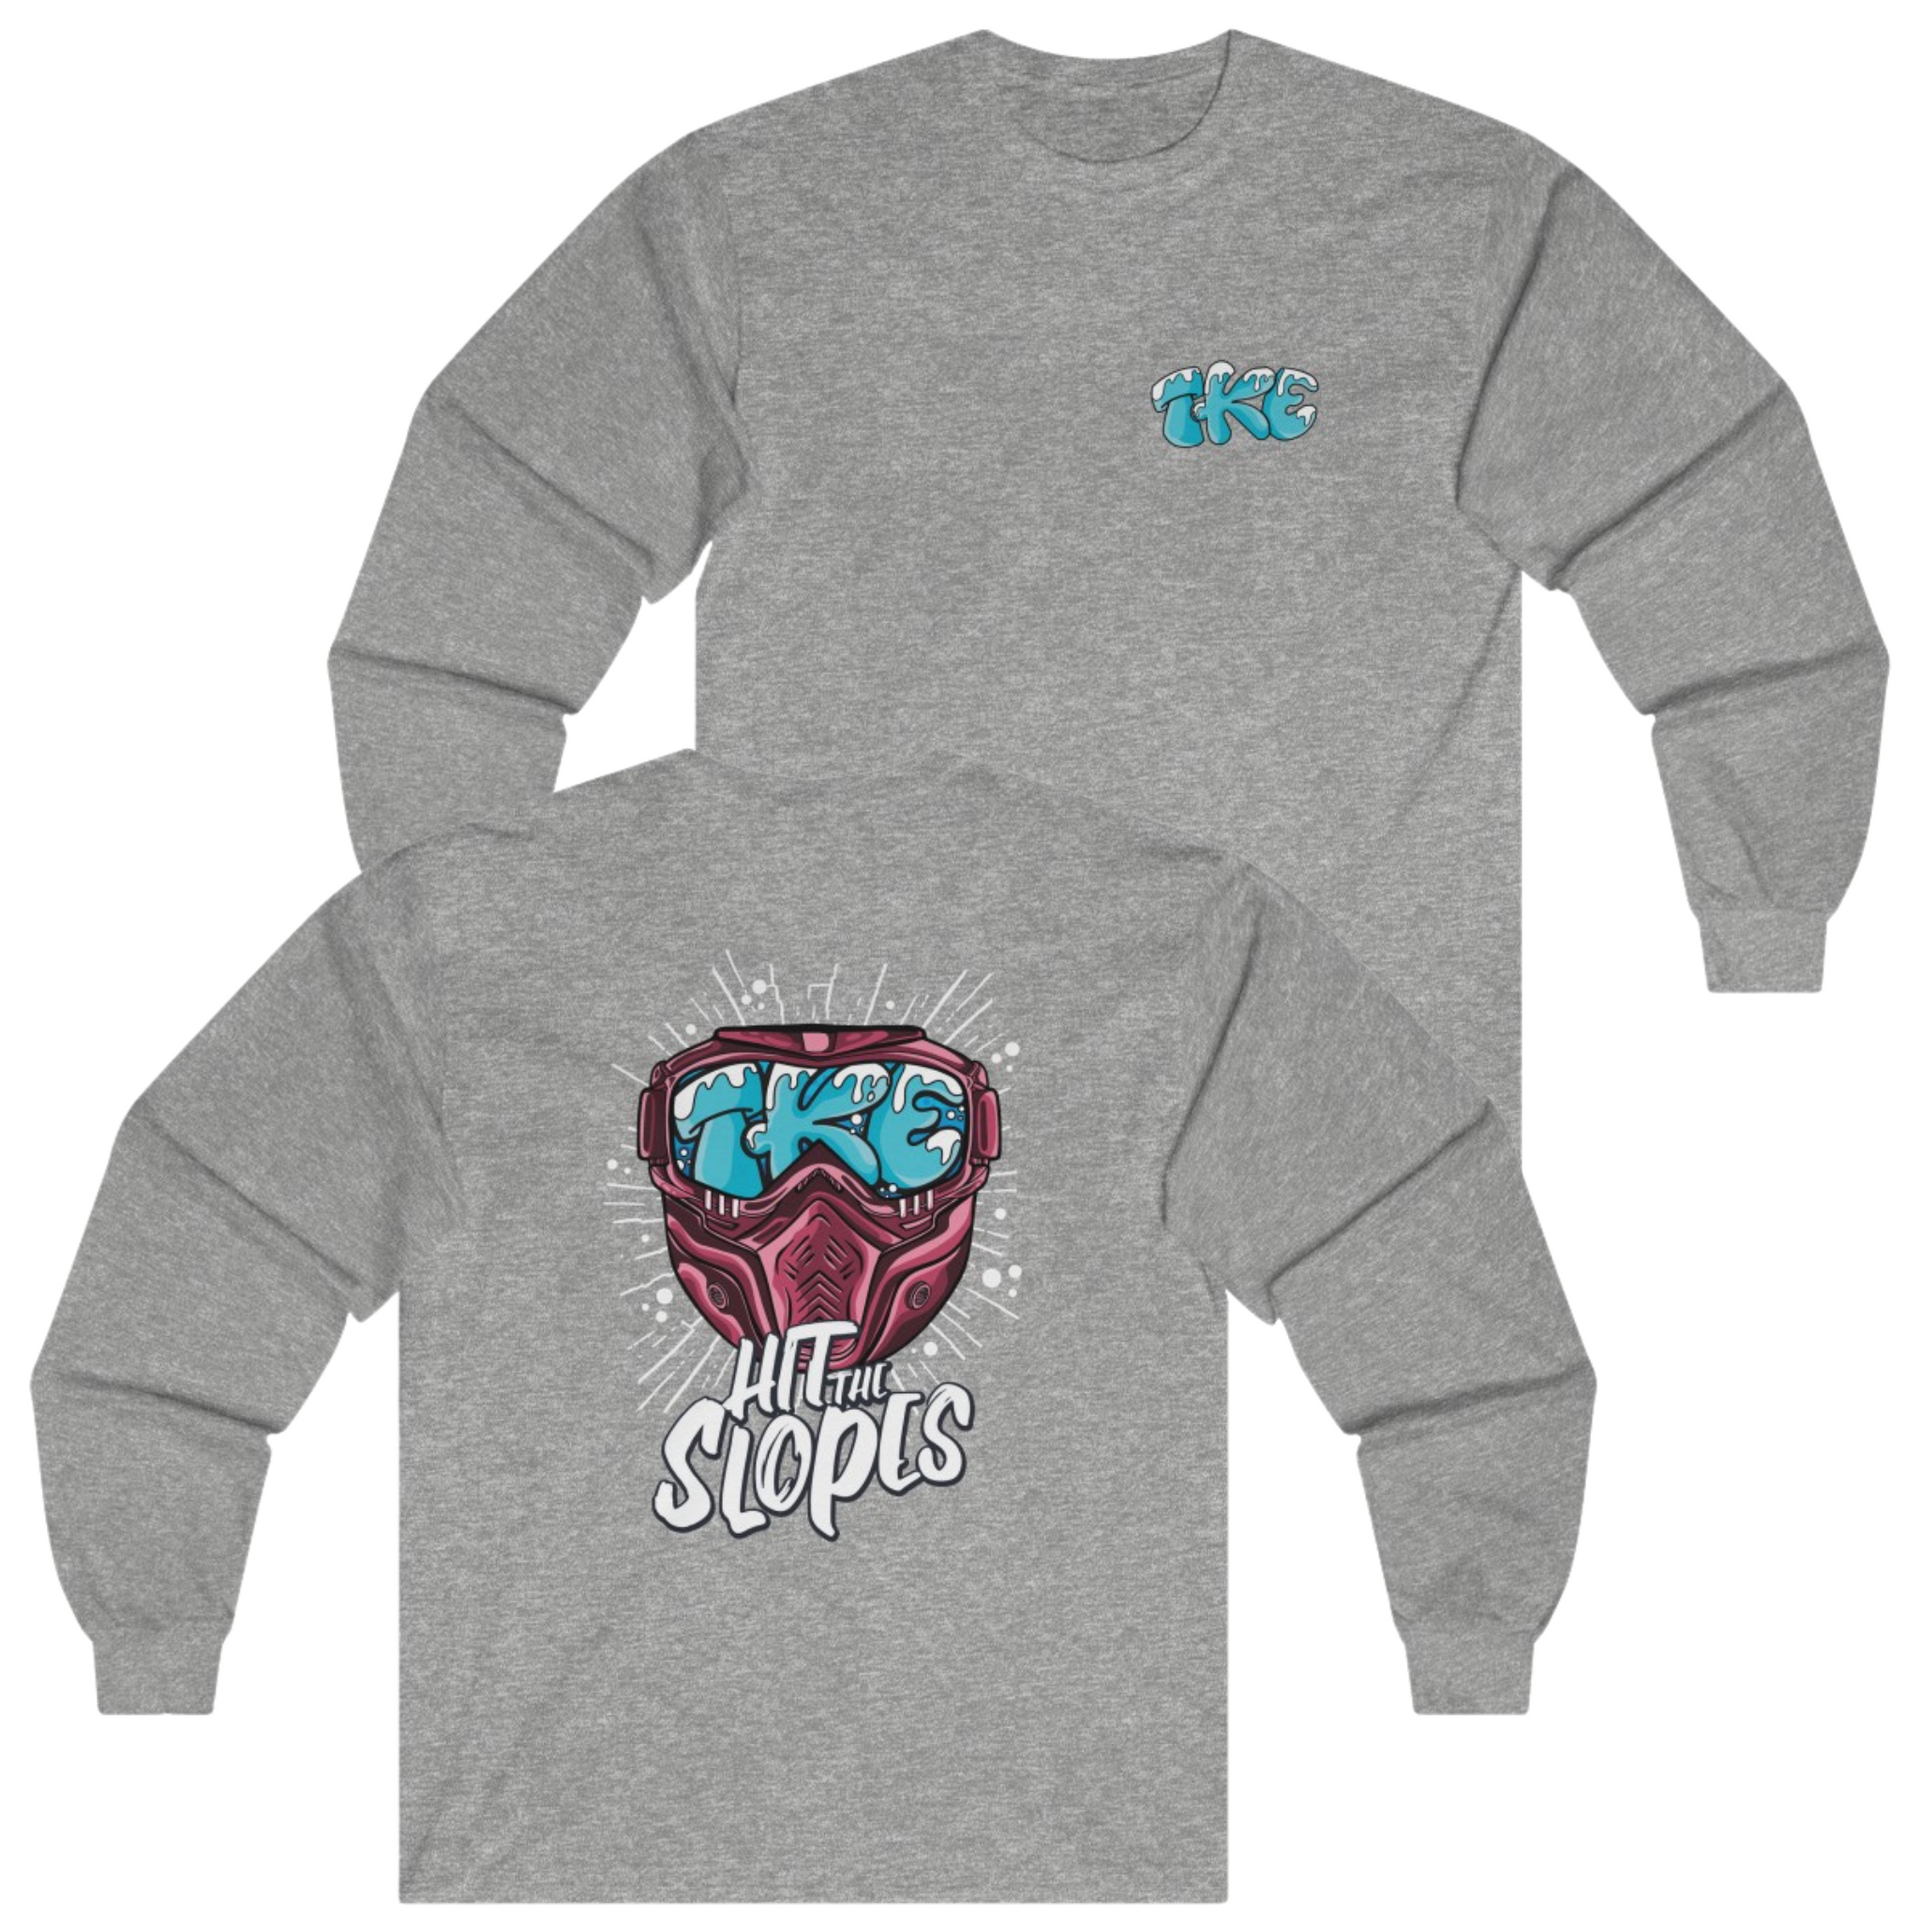 Grey Tau Kappa Epsilon Graphic Long Sleeve T-Shirt | Hit the Slopes | TKE Clothing and Merchandise